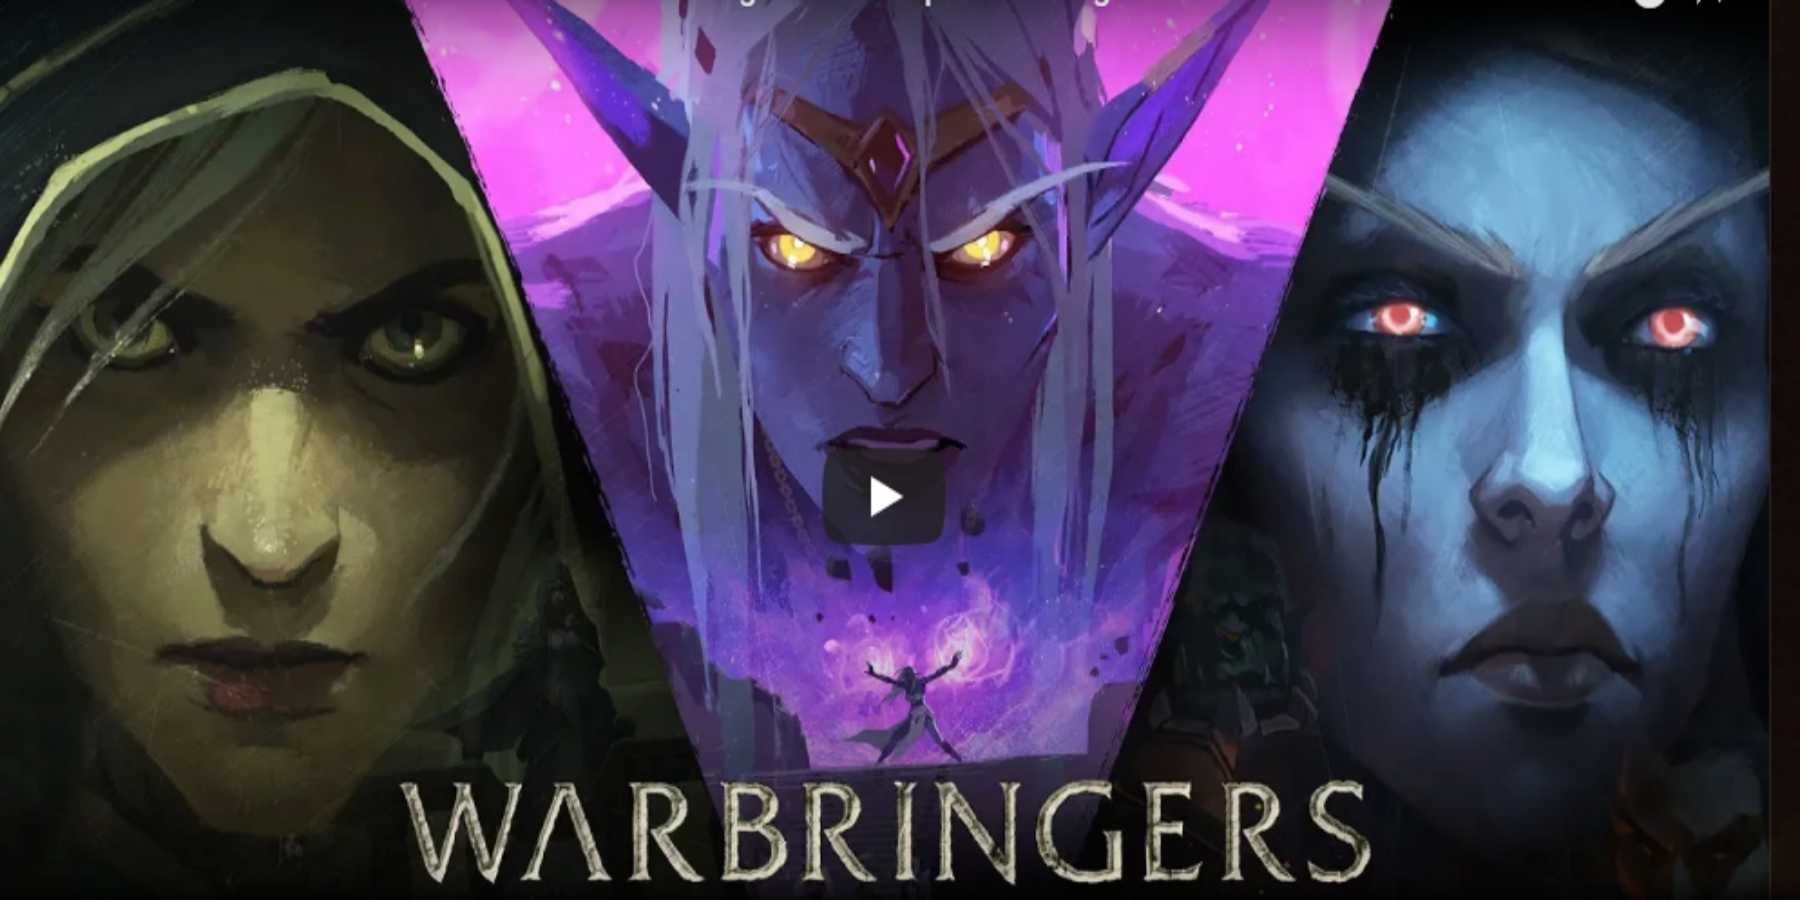 Trailer de Warbringers | Trío de cortos animados de World of Warcraft